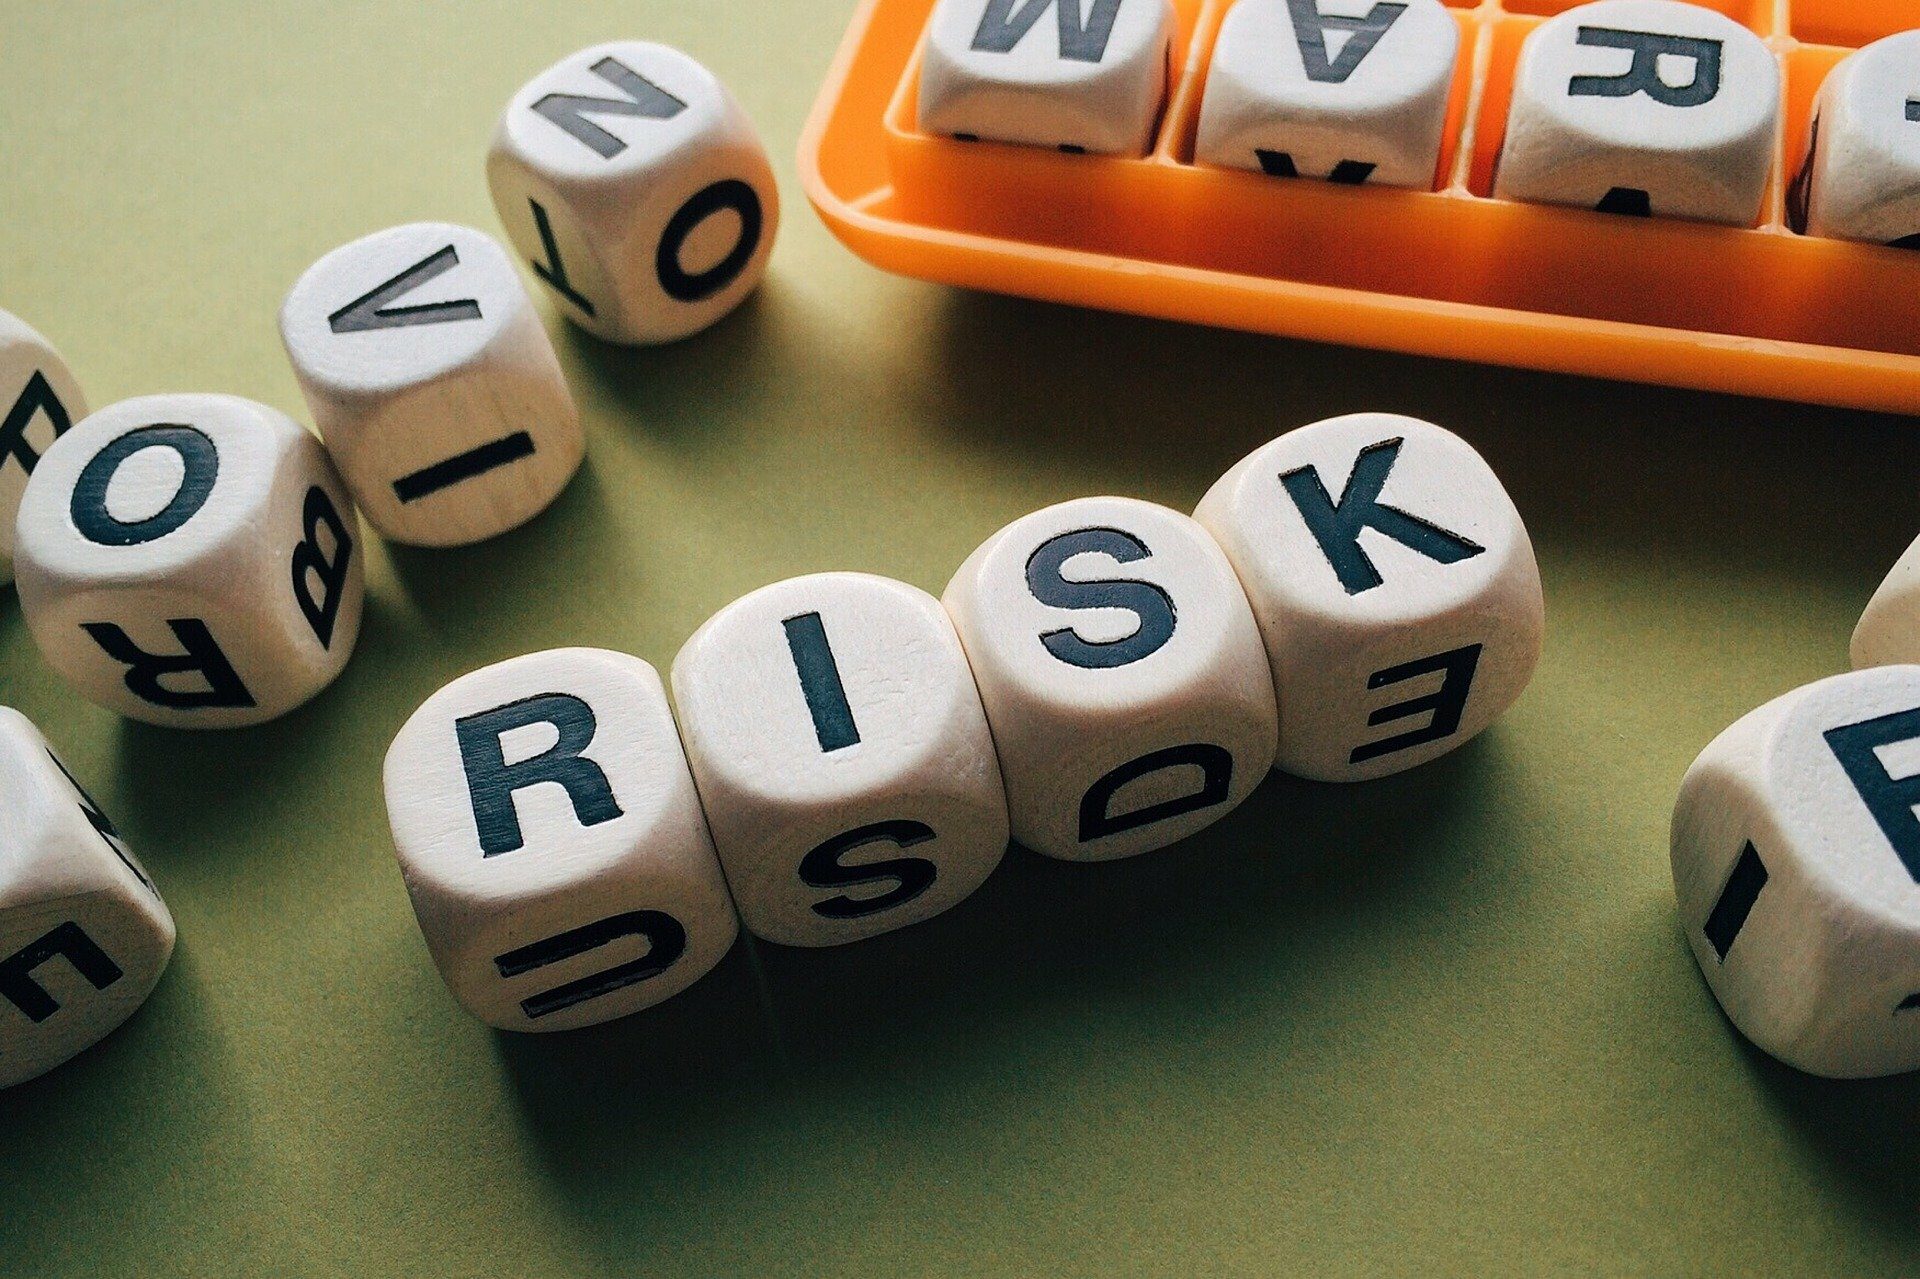 Sistemi di prevenzione del rischio WB